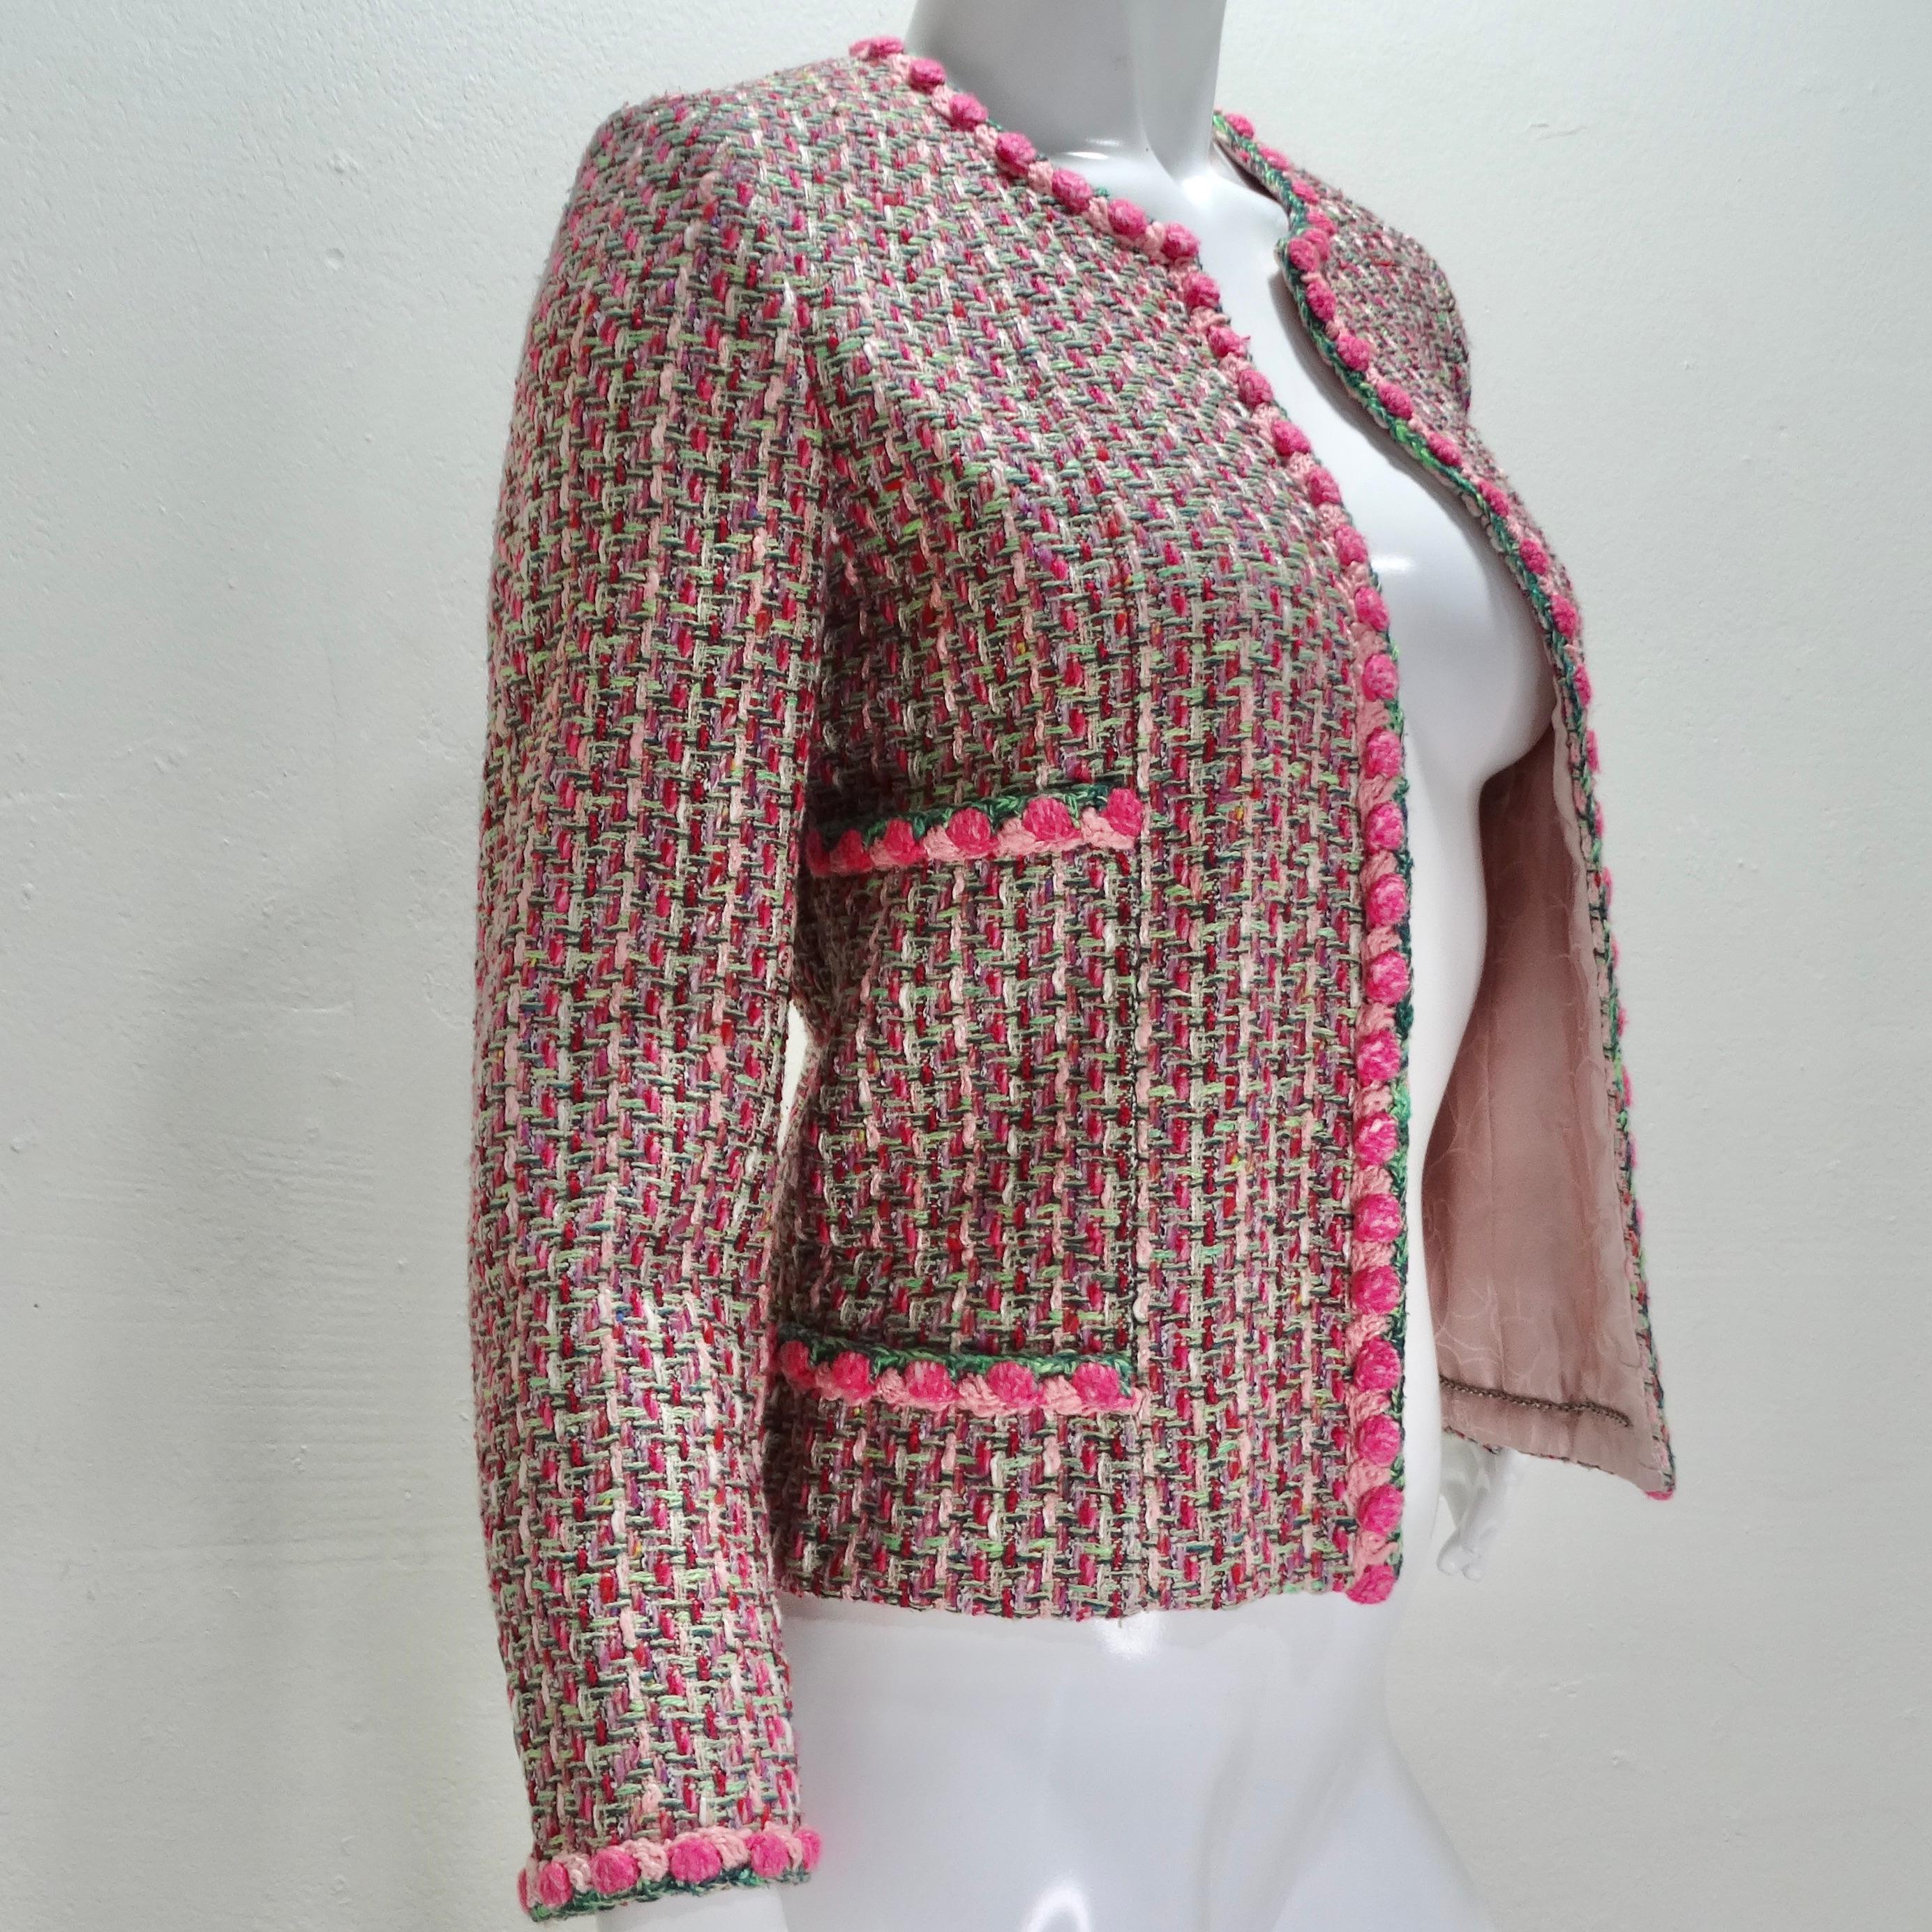 Voici l'exquise veste de soirée en tweed rose de Chanel 2002, une pièce intemporelle et féminine qui respire la sophistication et l'élégance. Confectionnée en tweed classique Chanel dans des teintes roses vibrantes, cette veste de soirée est une